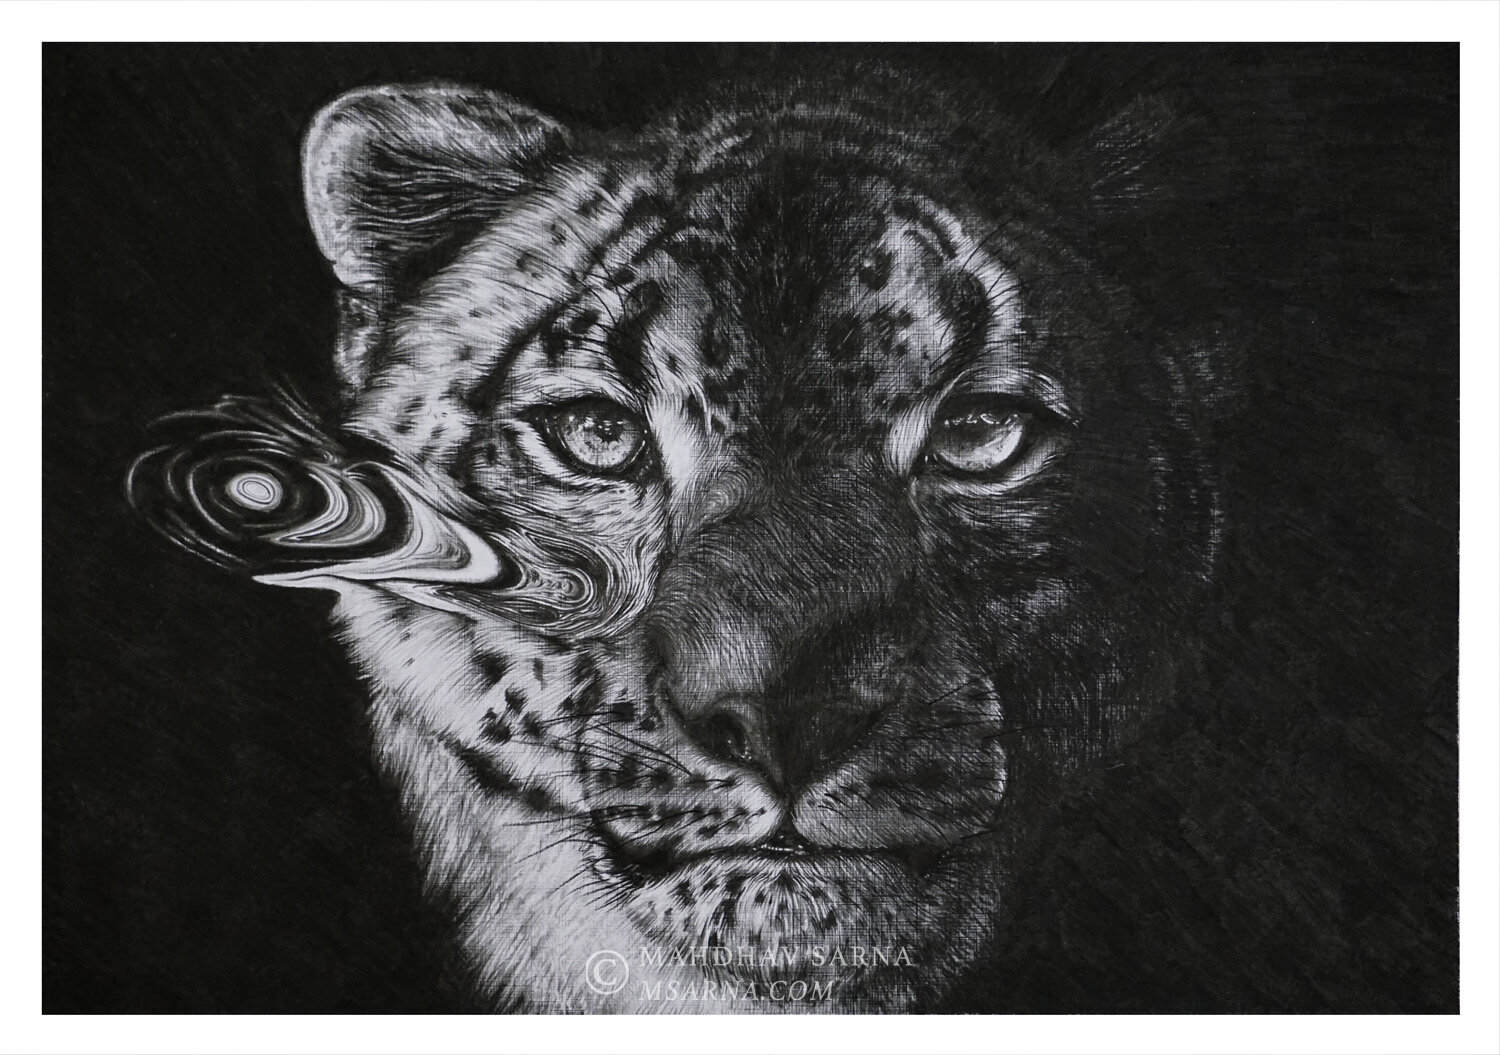 snow leopard pencil drawing egsl wildlife art mahdhav sarna.jpg